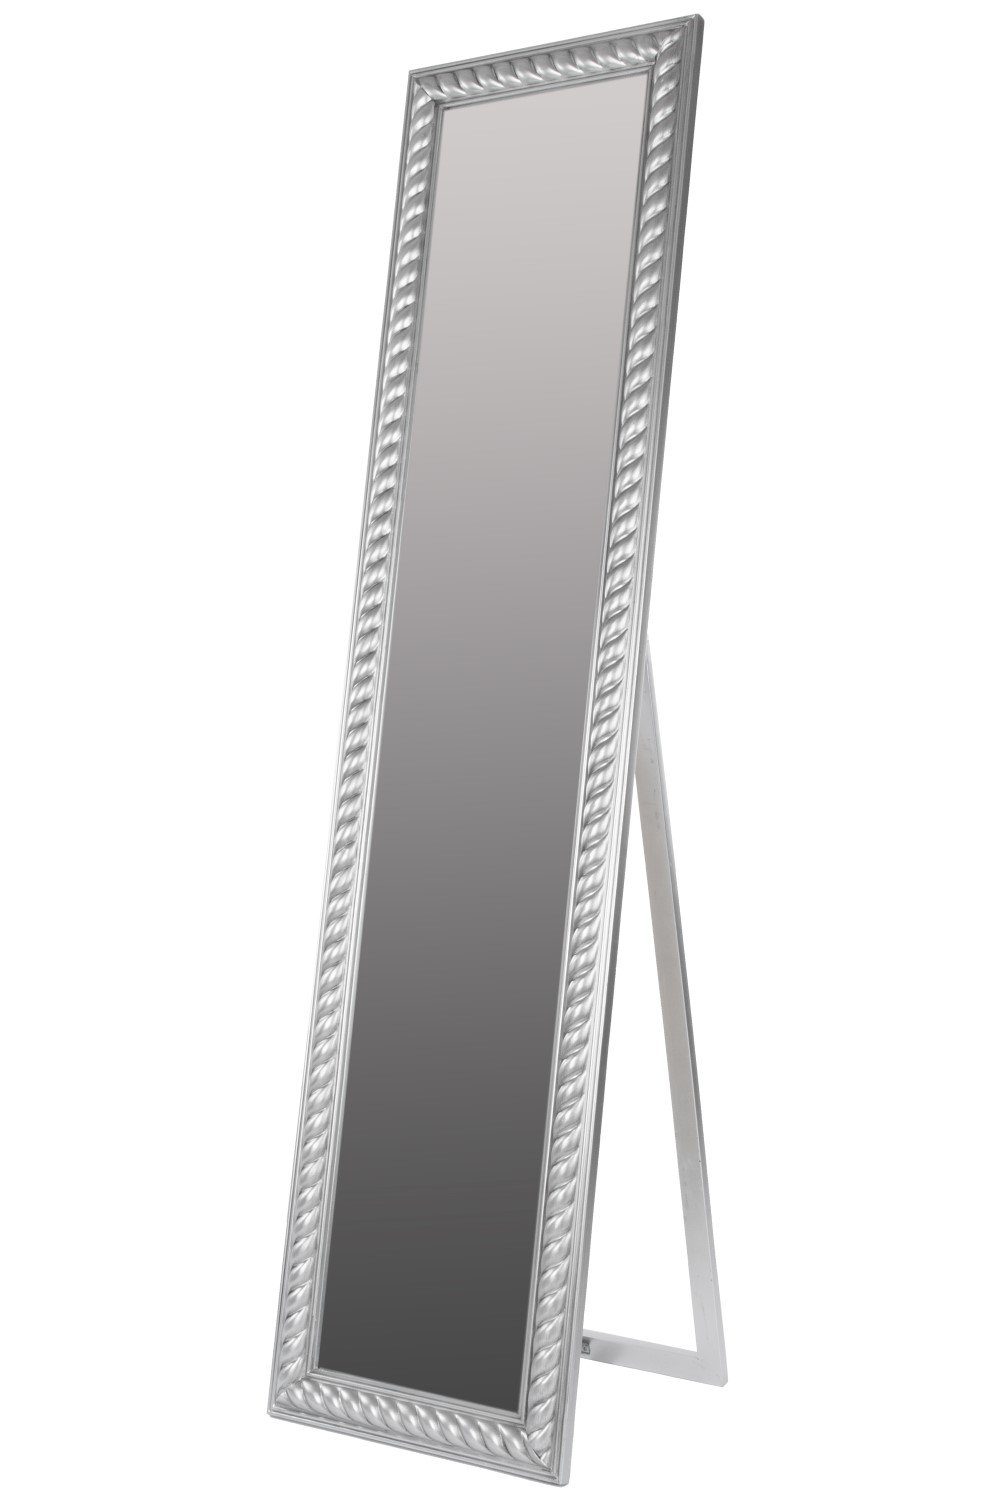 elbmöbel Standspiegel Standspiegel 180x45x7cm, Spiegel: Ganzkörperspiegel 180x45x7 cm Landhausstil silber | Standspiegel